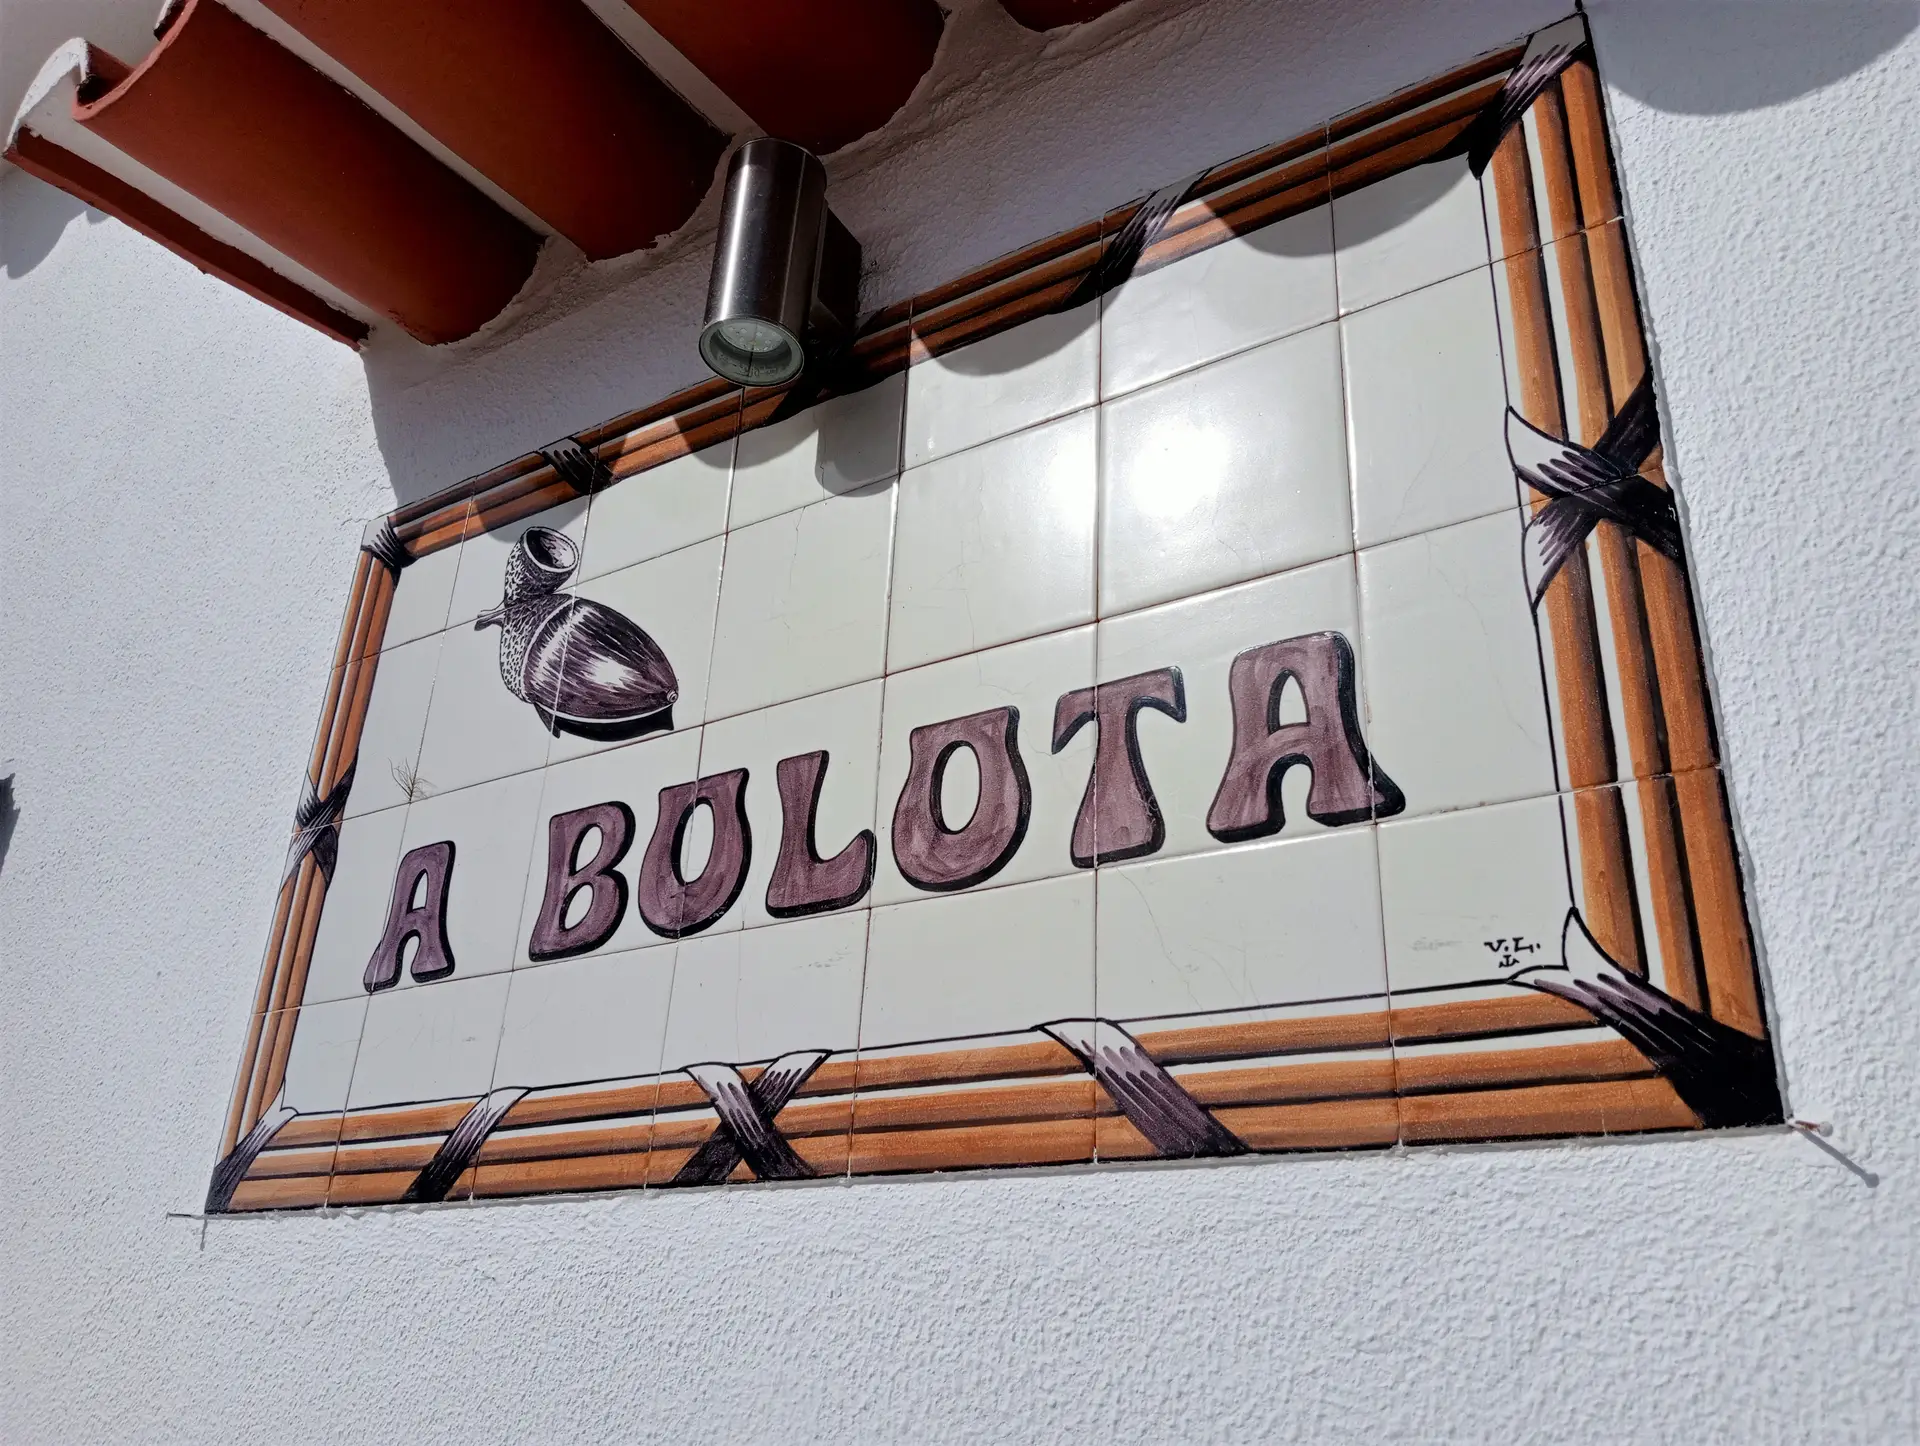 O nome do restaurante alentejano em azulejo